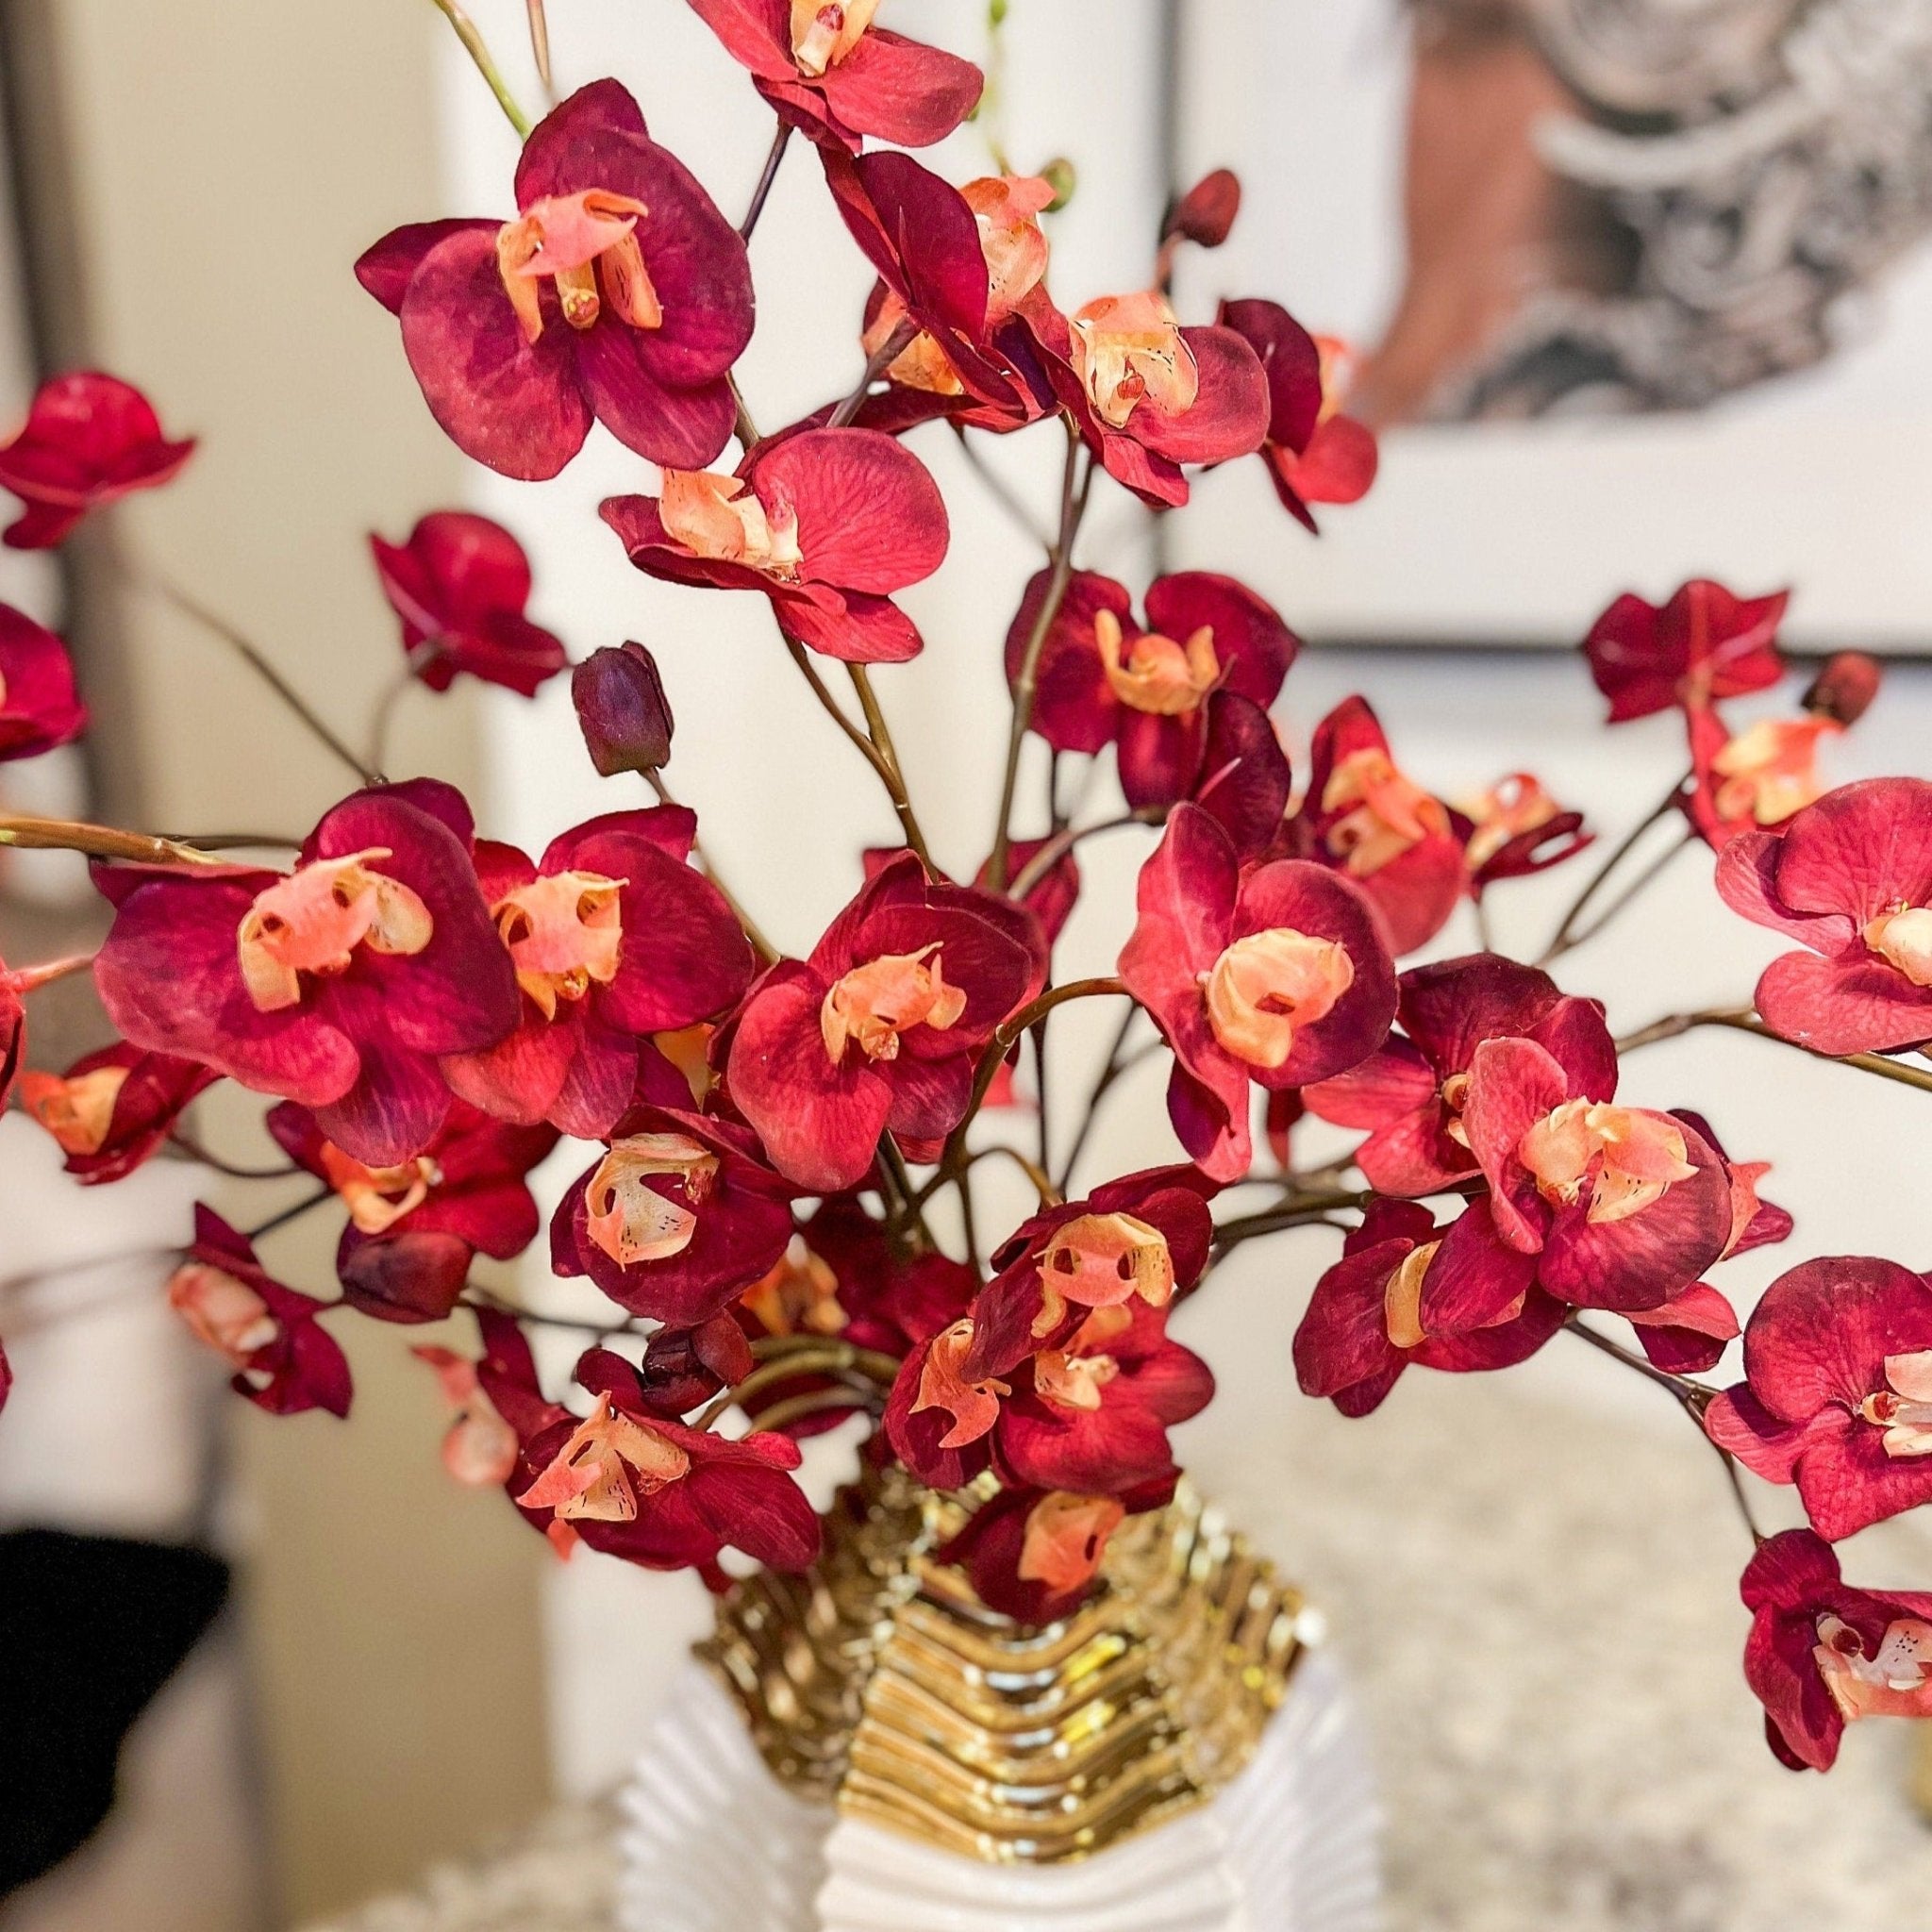 Burgundy Phalaenopsis Orchid (25") | Red Flower | Artificial Flowers | Faux Flowers | Faux Floral Arrangement - DiamondValeDecor